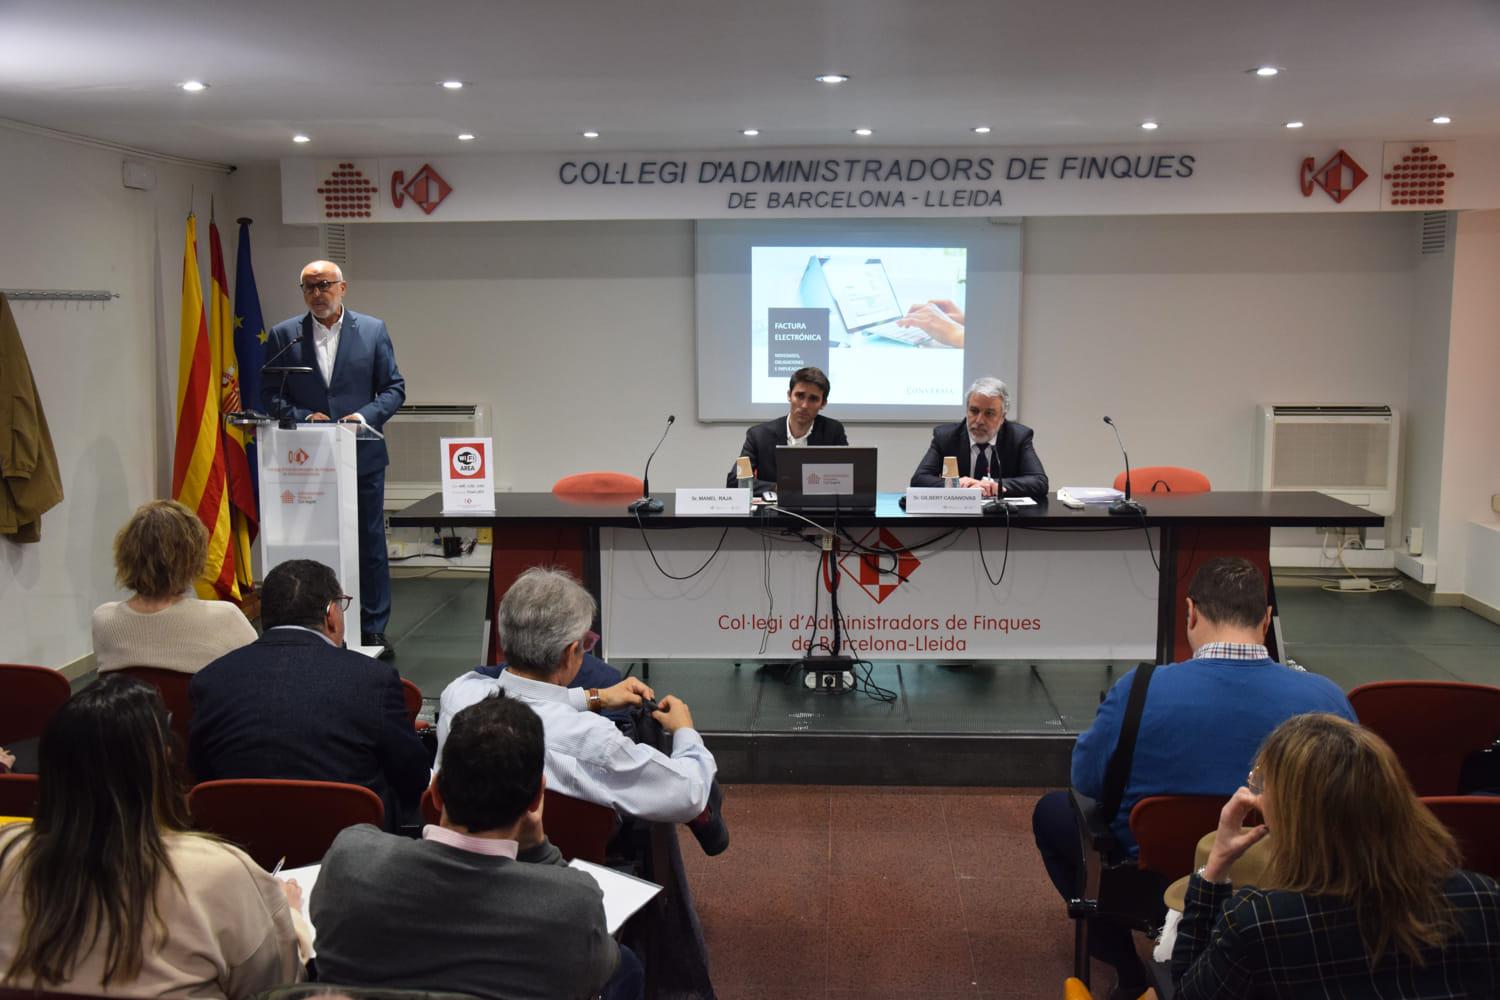 Sesión sobre Factura Electrónica para el Col·legi d'Administradors de Finques de Barcelona-Lleida